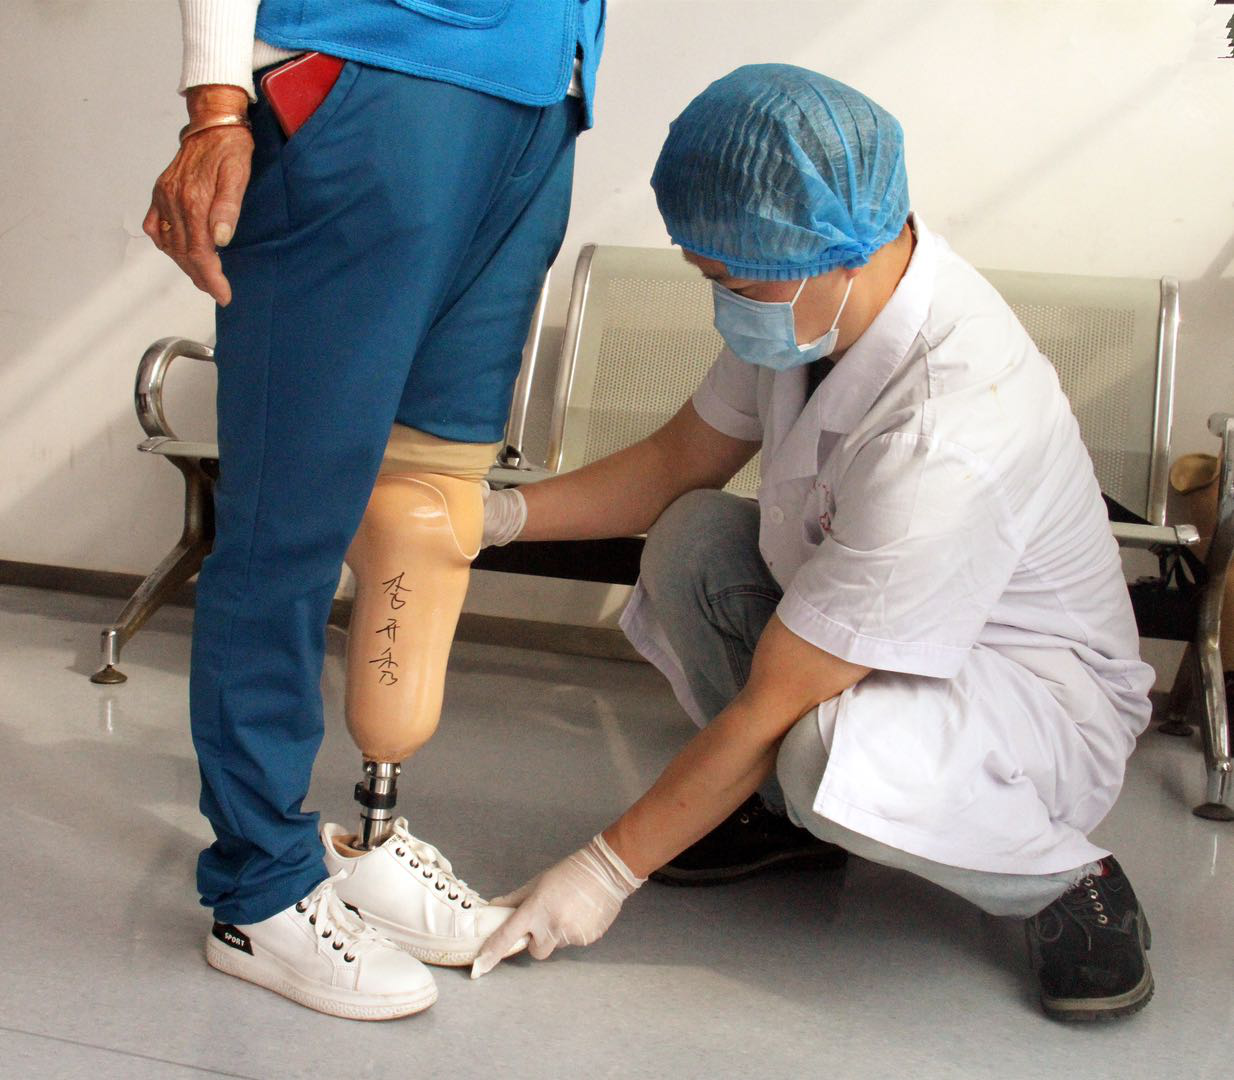 免费为凉山彝族自治州50名贫困肢体残疾人装配假肢